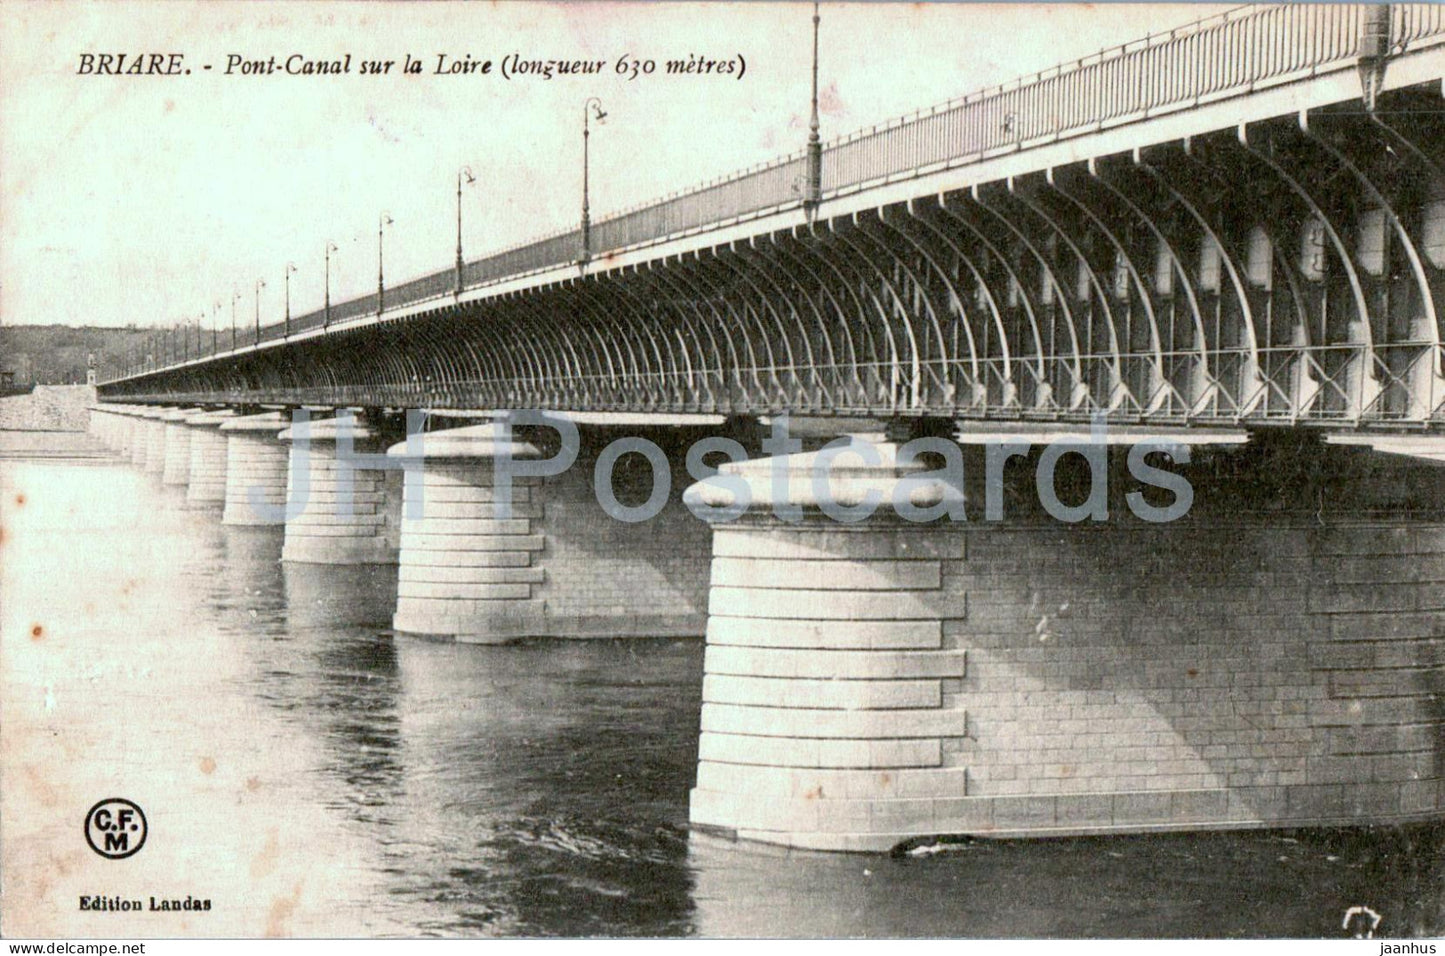 Briare - Pont Canal sur la Loire - longueur 630 metres - bridge - old postcard - France - used - JH Postcards